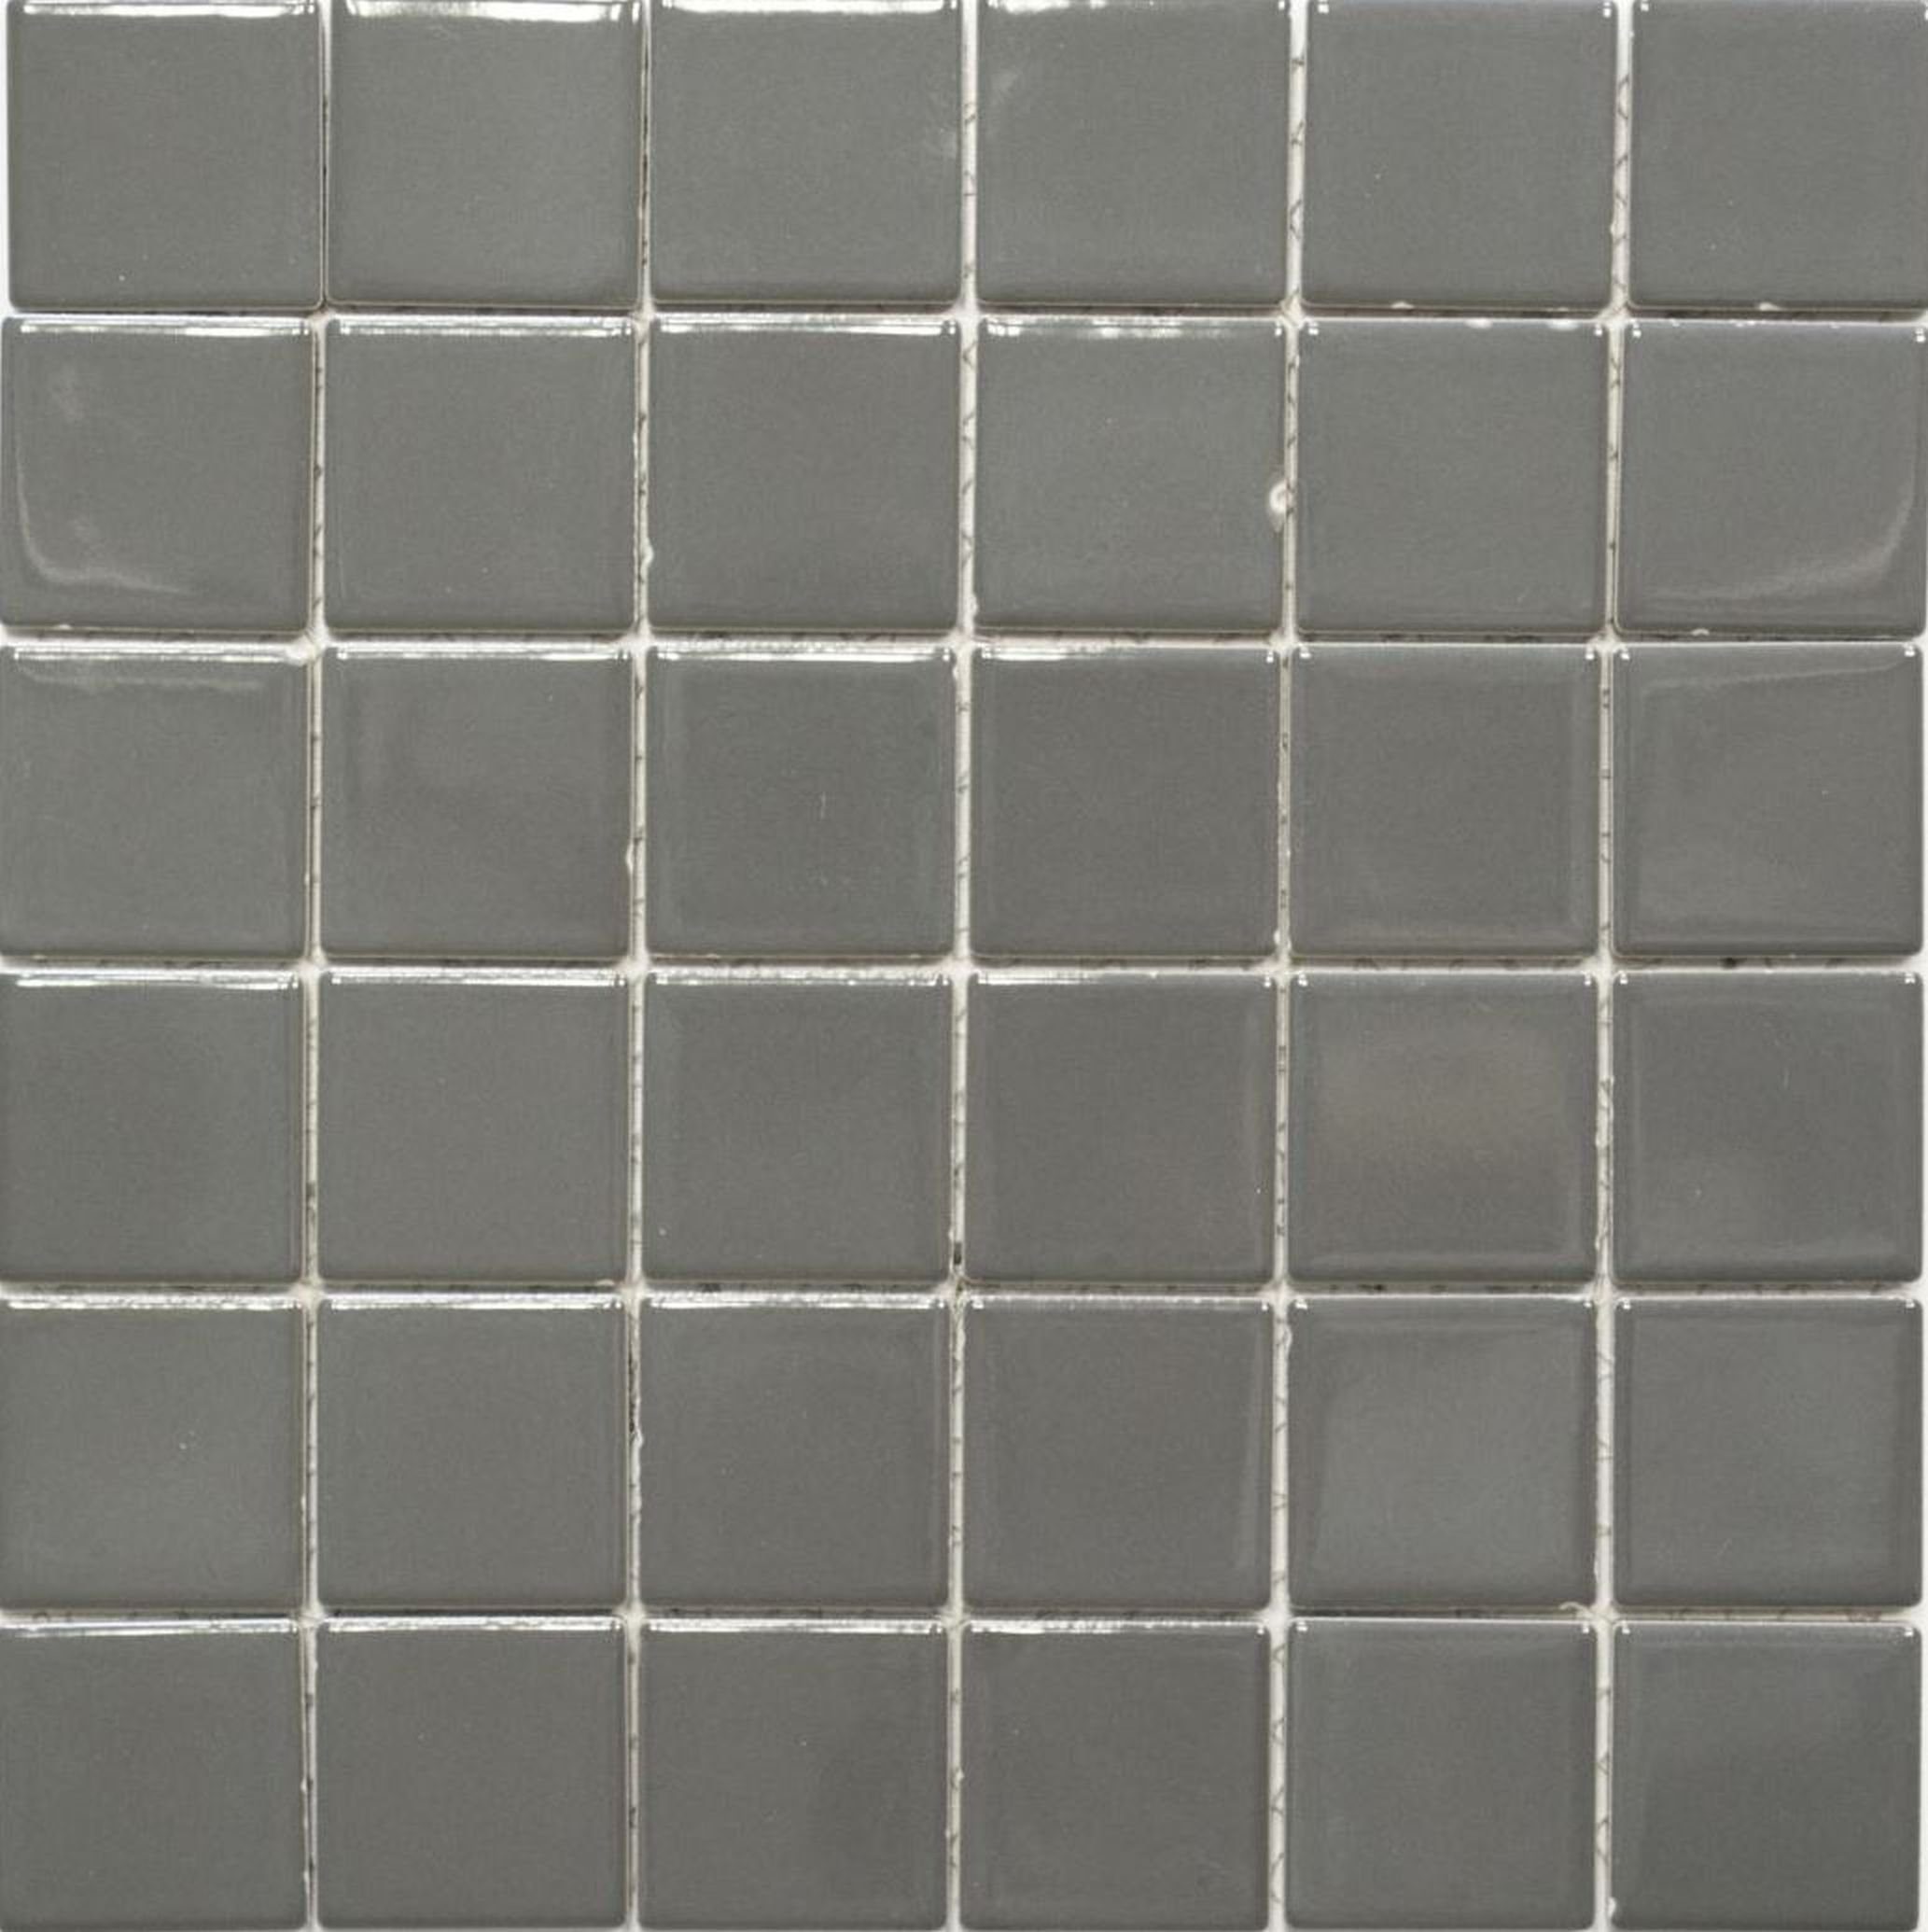 Mosani Mosaikfliesen Keramik Mosaik Fliese Fliesenspiegel metall glänzend Küchenwand grau